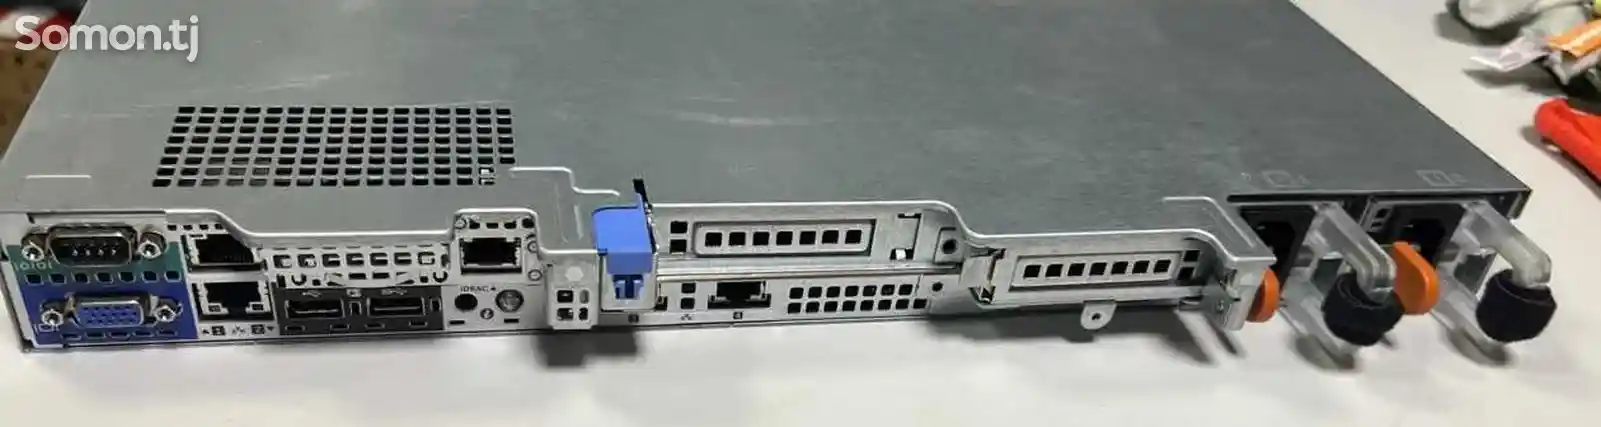 Сервер Dell PowerEdge R430 4SFF-4